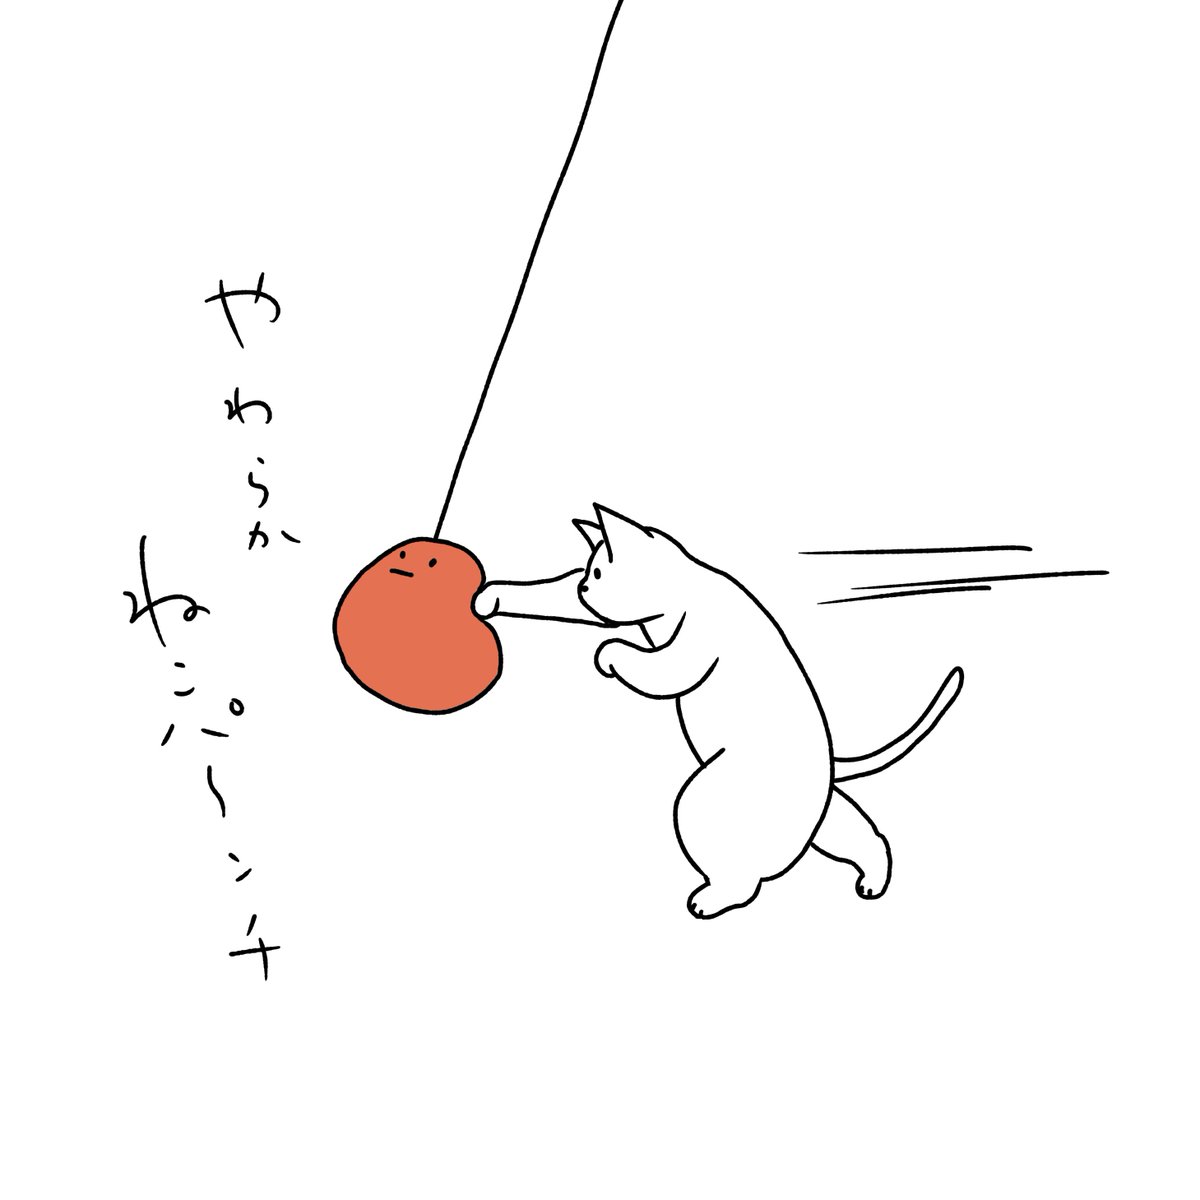 石川ともこさんはtwitterを使っています 今日は少し強めに打って出ないと色々終わらないな Illustration イラスト Cat 猫 ねこ しろさん ねこパンチ T Co Qiz4oabkzp Twitter